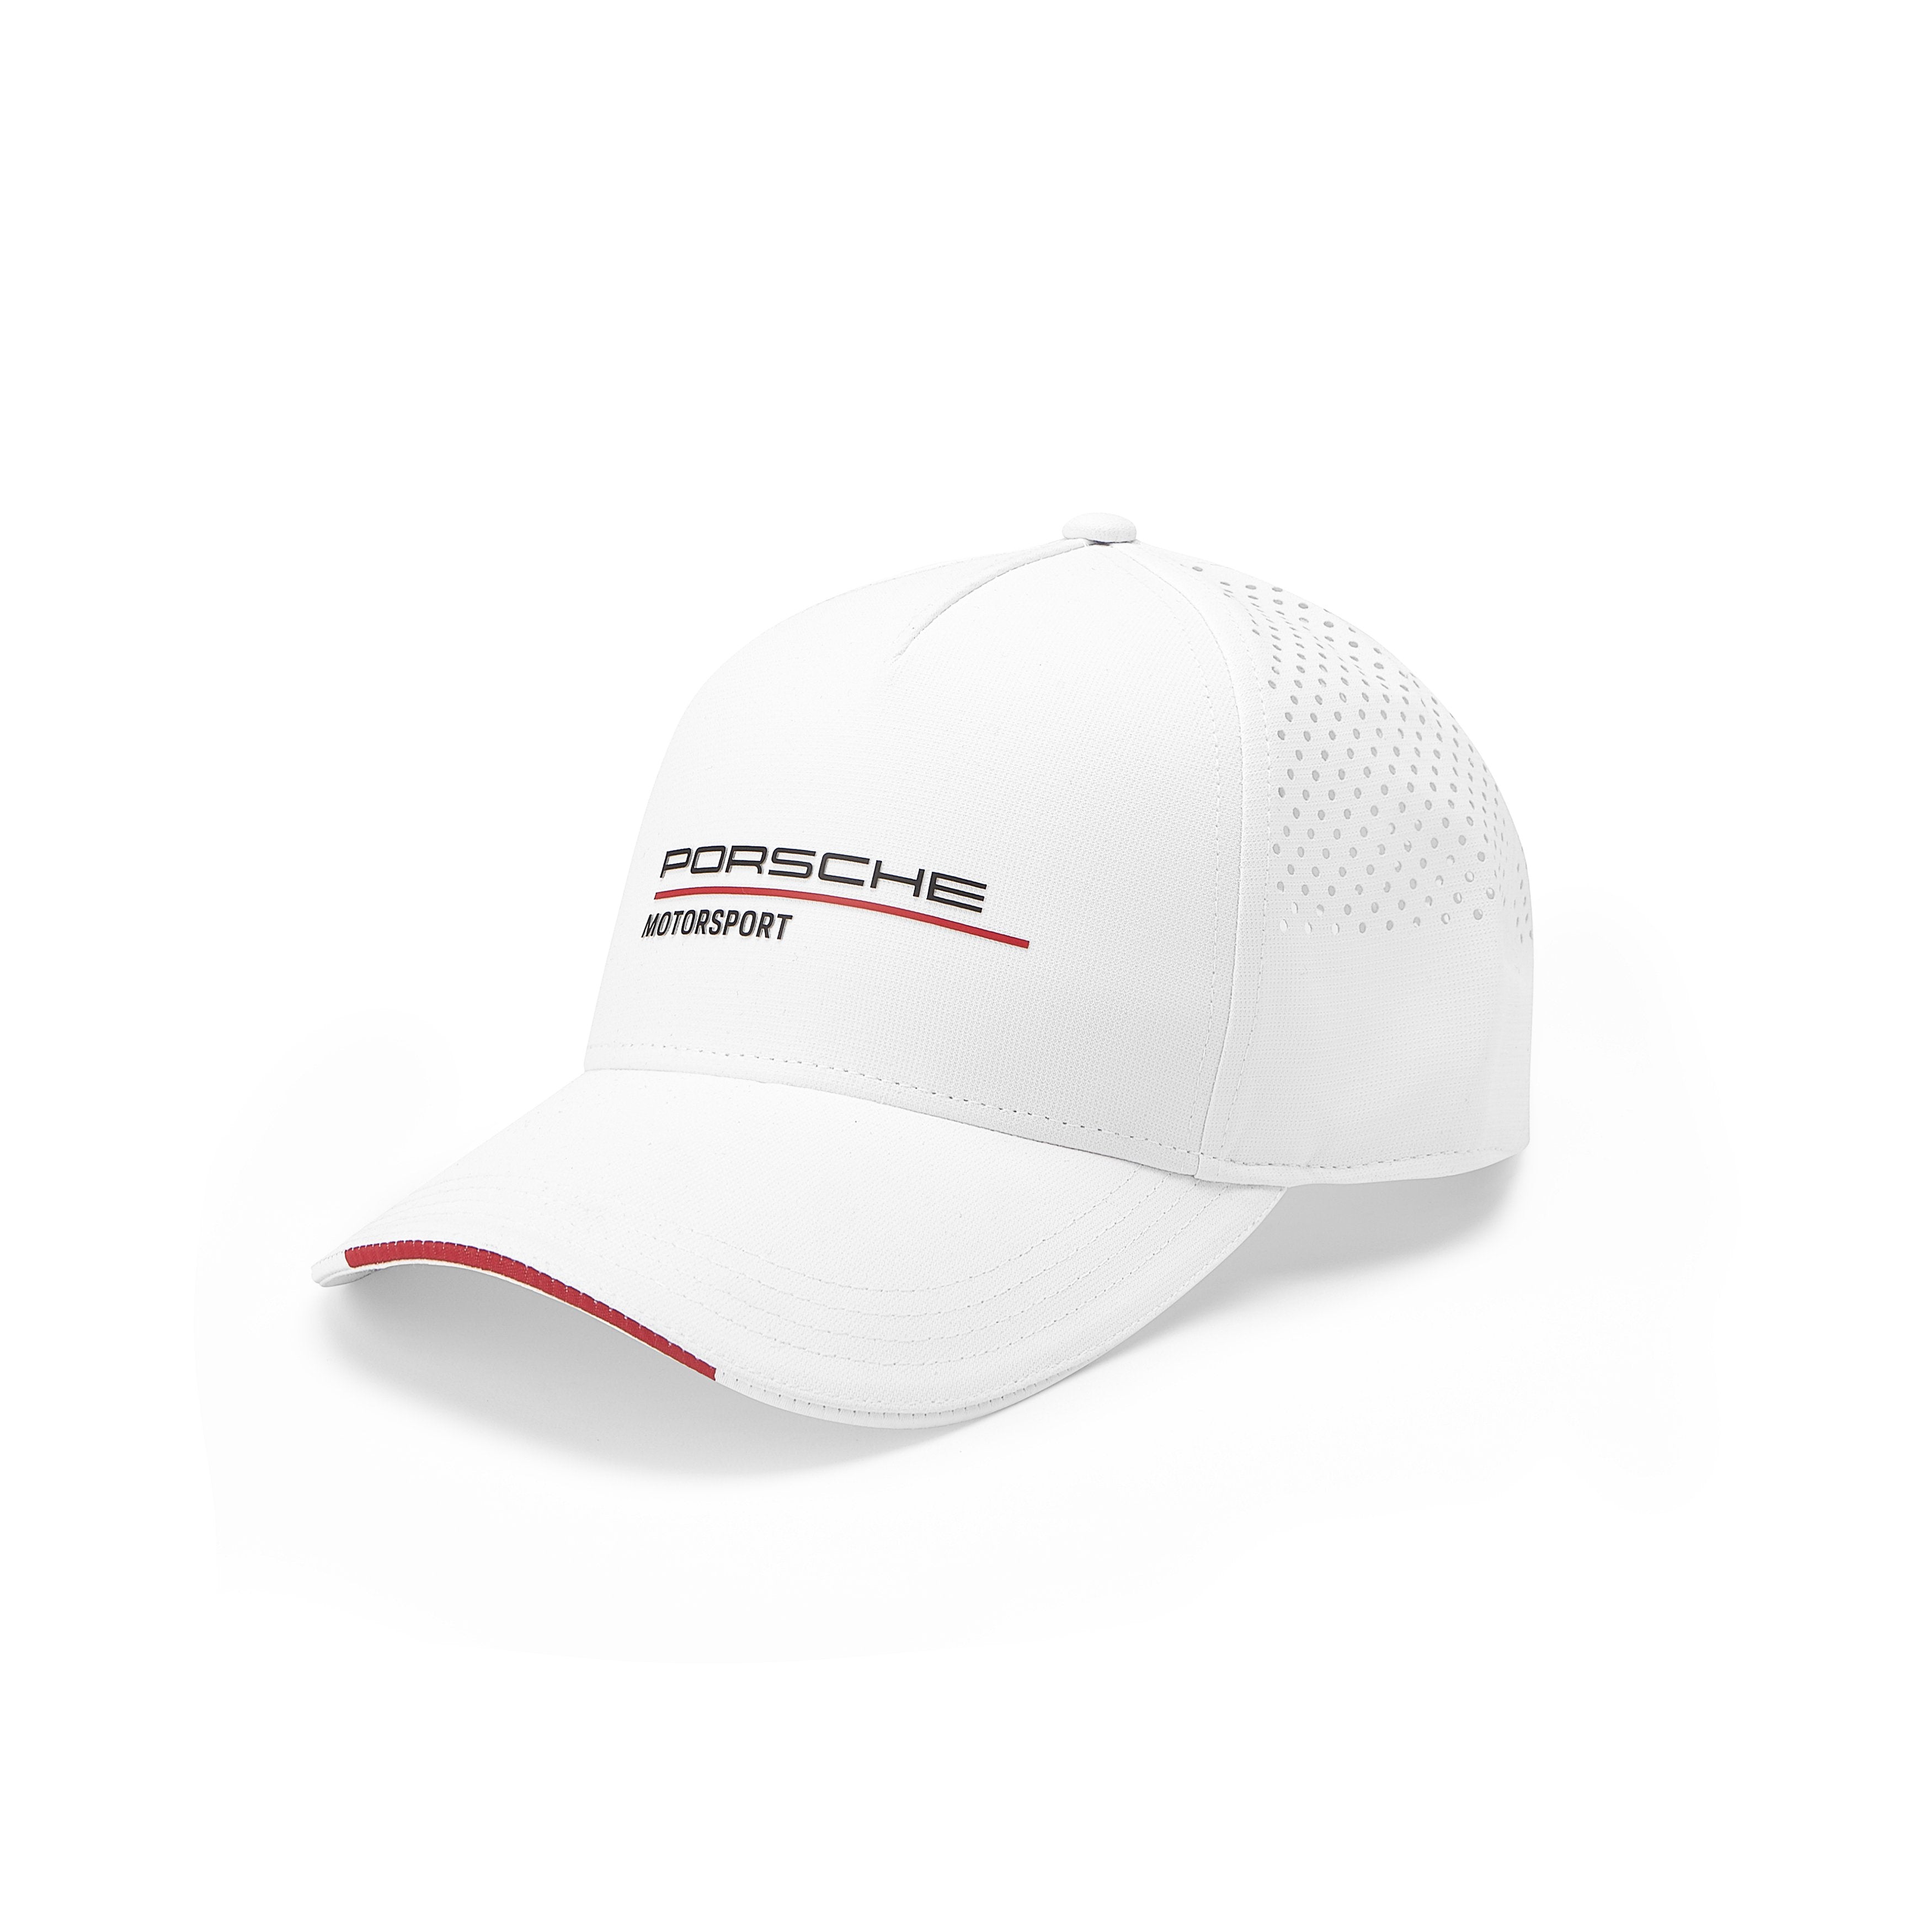 Porsche Motorsport Hat White